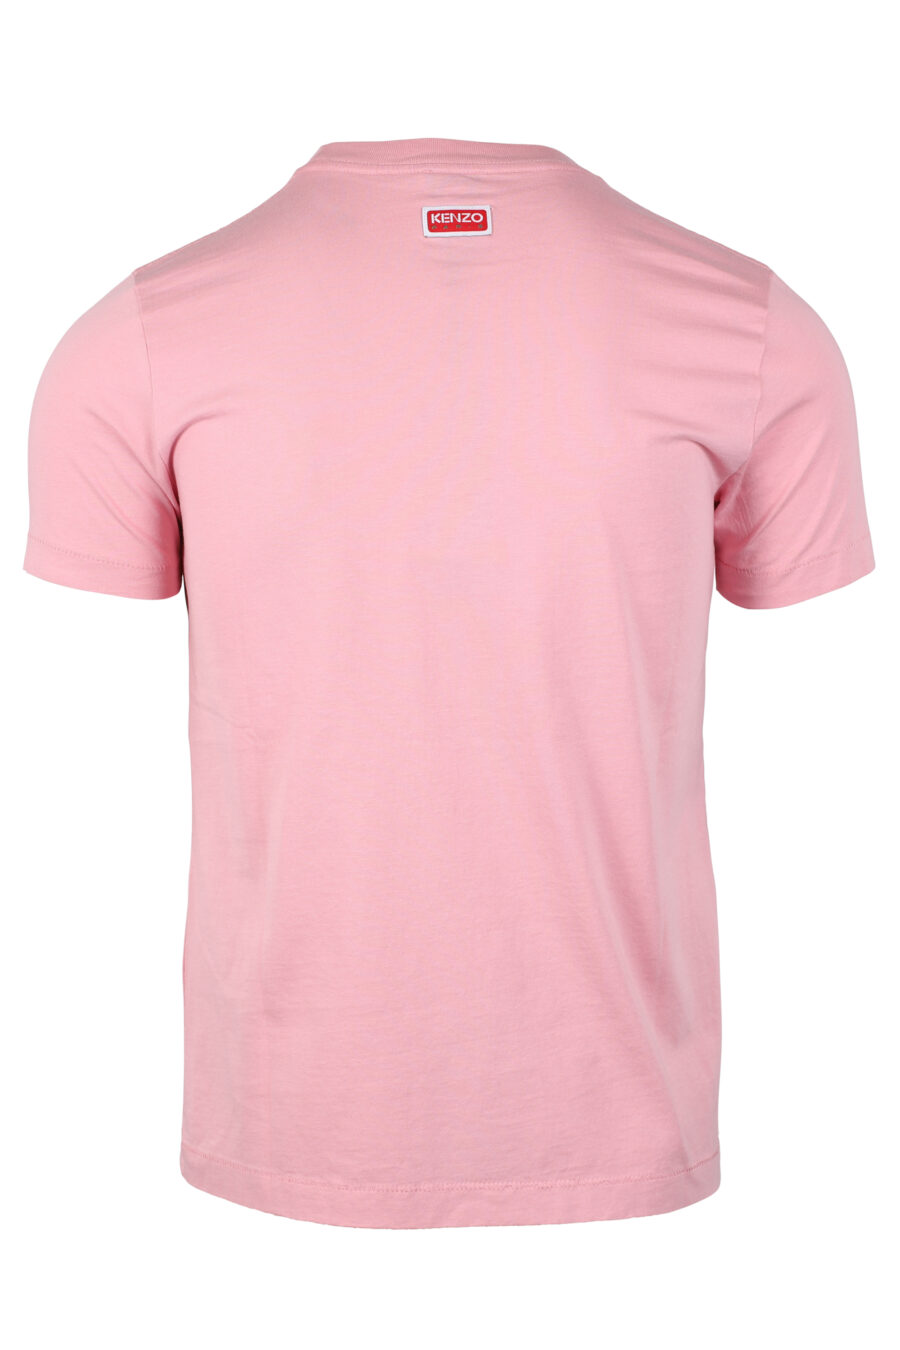 Pink T-shirt with orange flower maxilogo - IMG 4640